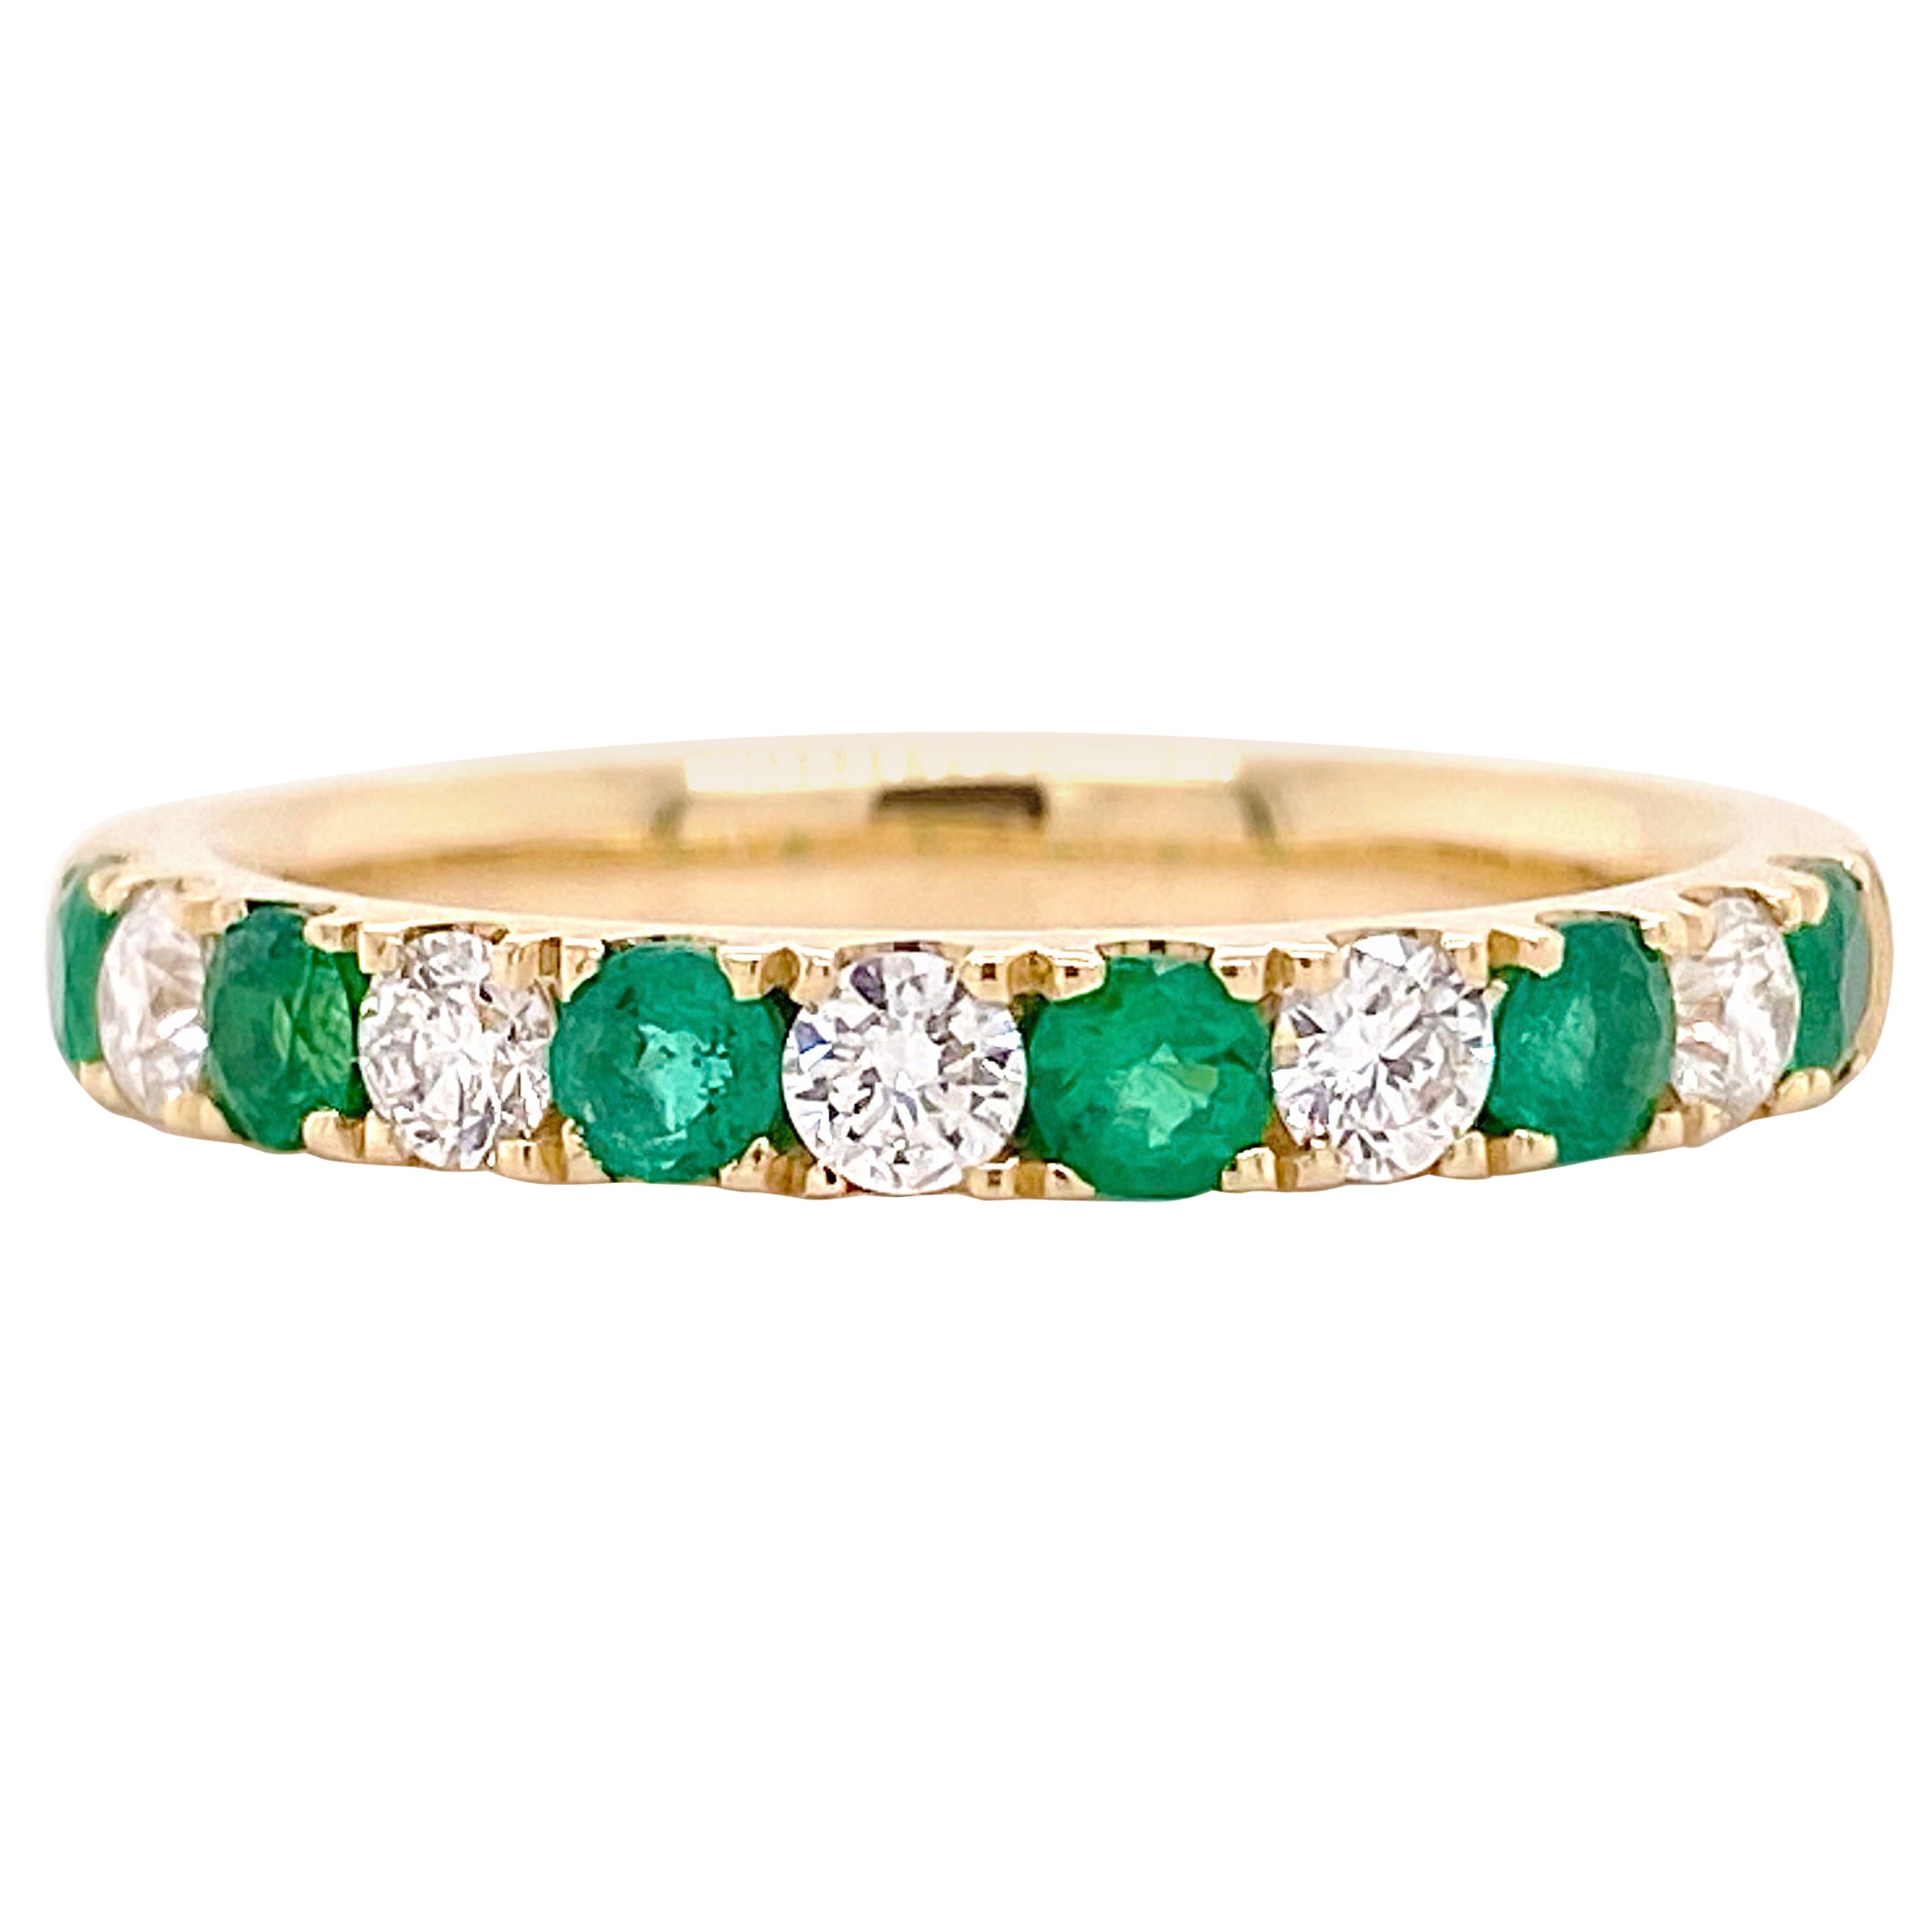 Diamant-Smaragd-Ring, Gelbgold-Ehering, grüne Smaragde und weißer Diamant